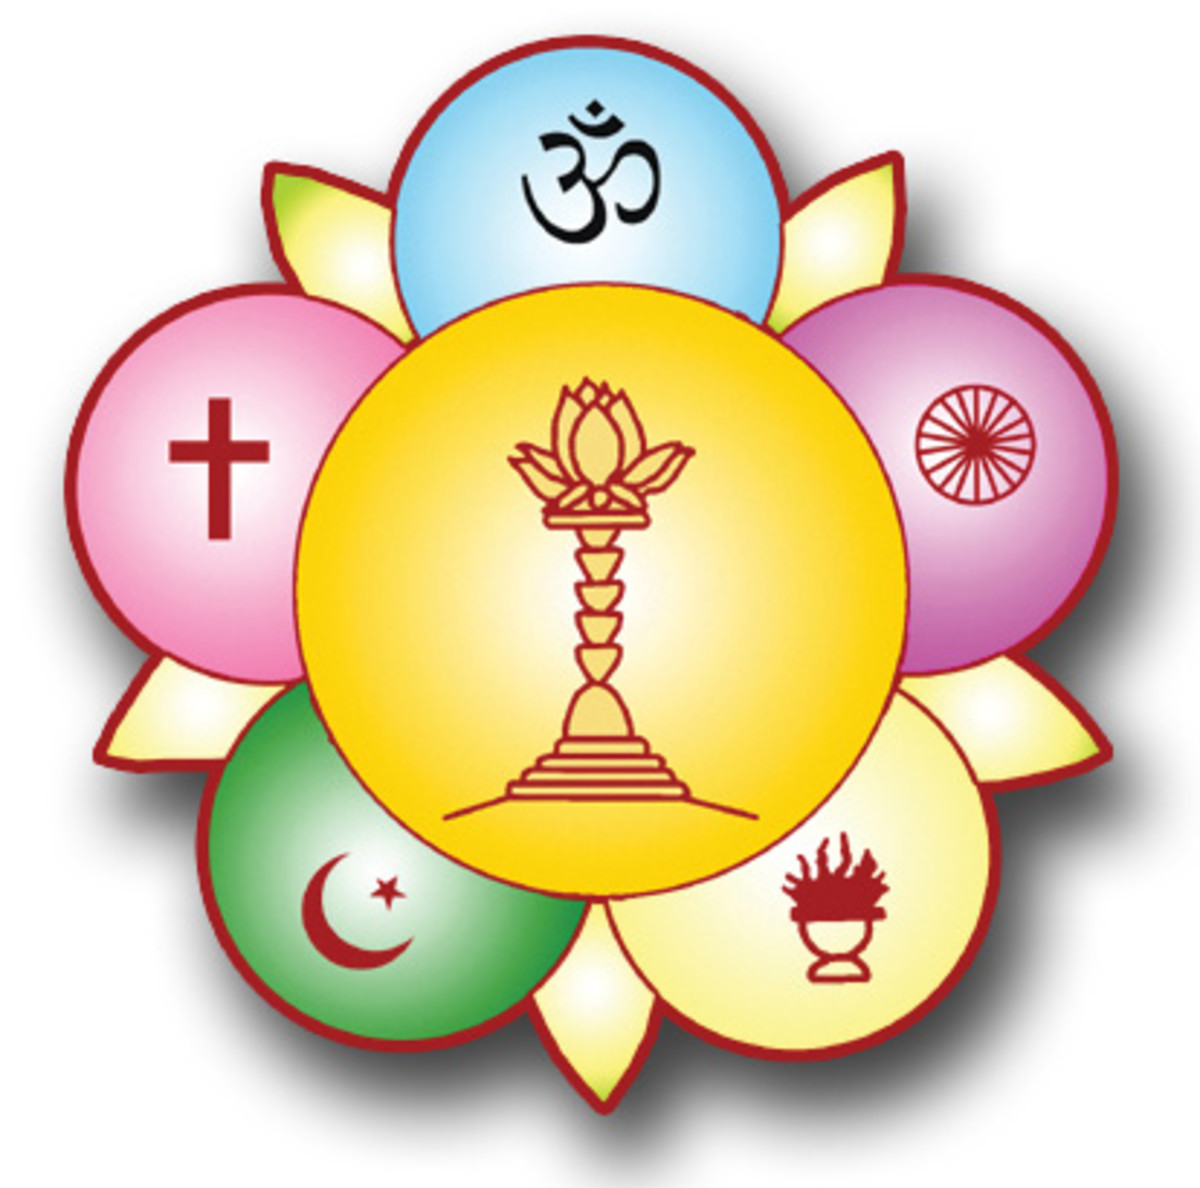 Una versión en color del logo Baba diseñado para representar la unidad de todos los credos.